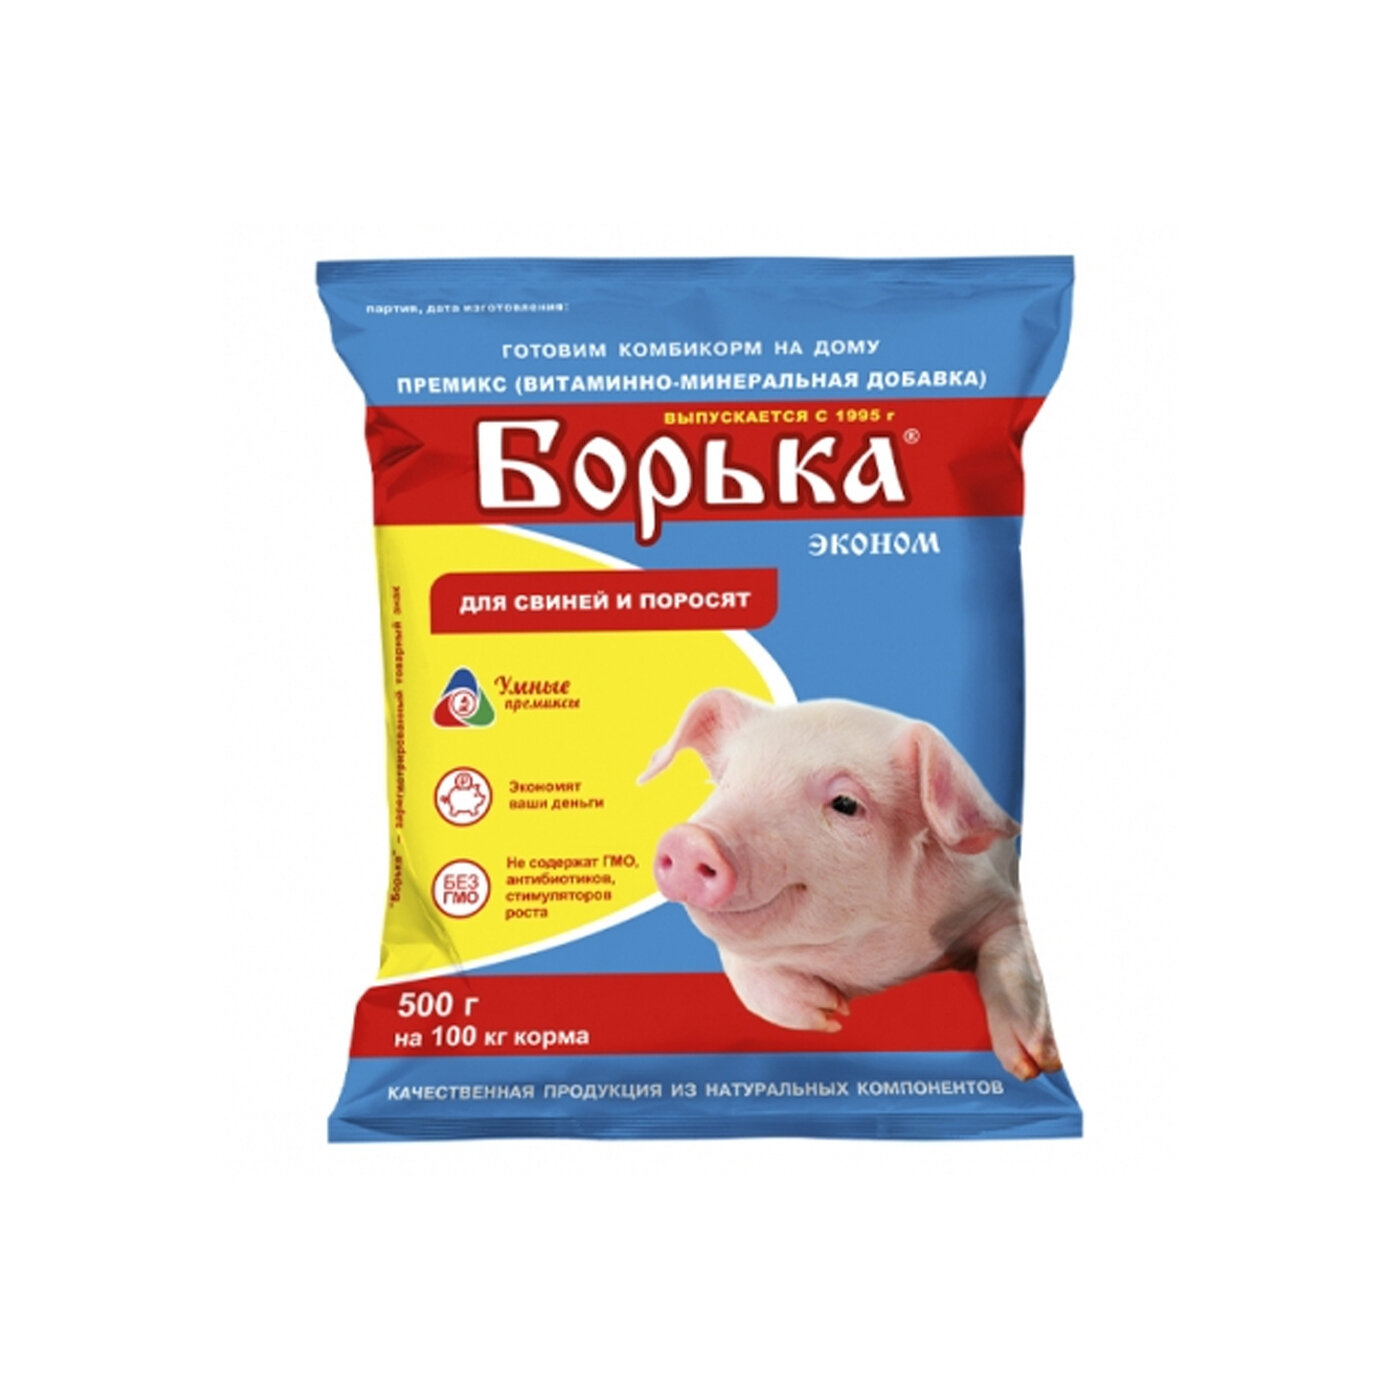 Премикс концентрат Борька (Эконом) для свиней и поросят 500 гр.